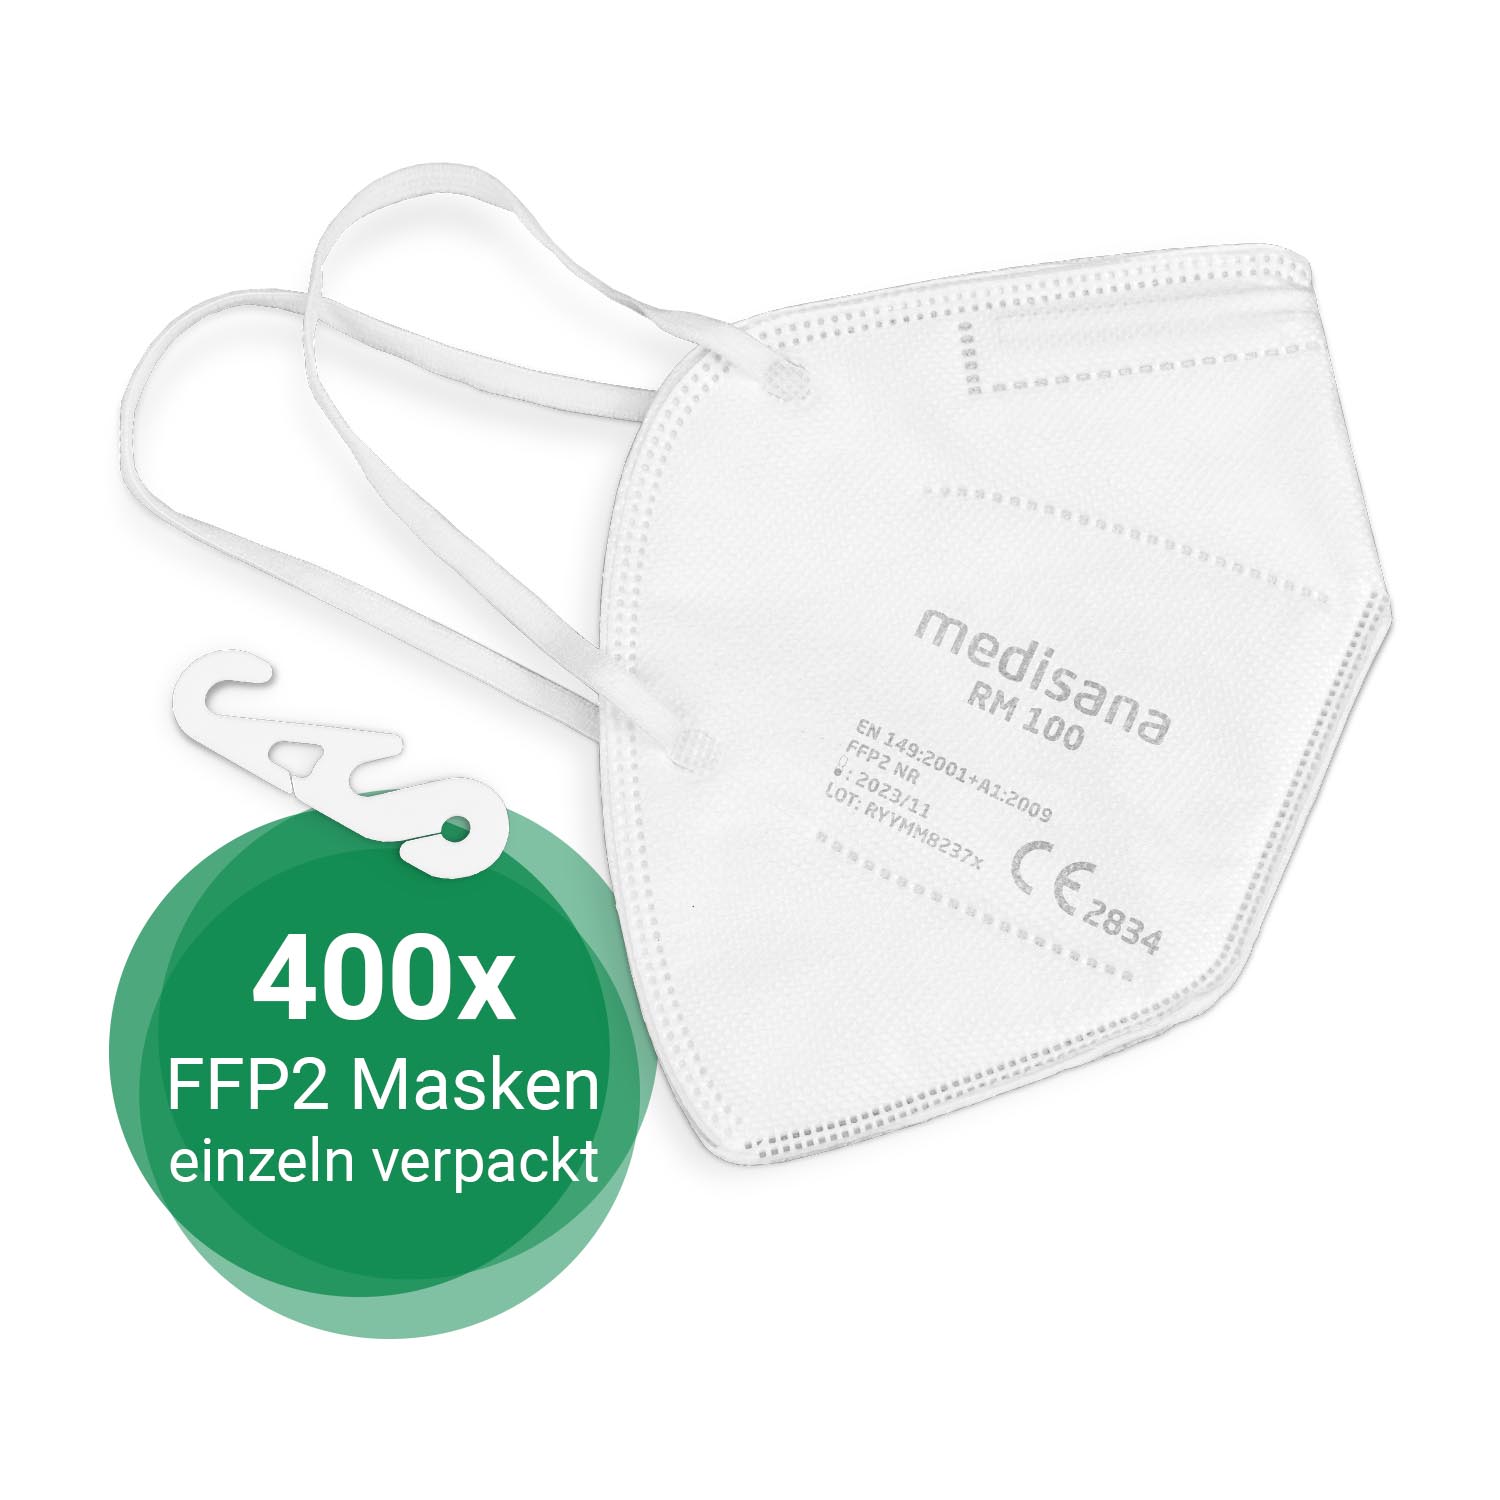 RM 100 Atemschutzmaske und 400x für Apotheken, medisana® FFP2 Einrichtungen Unternehmen